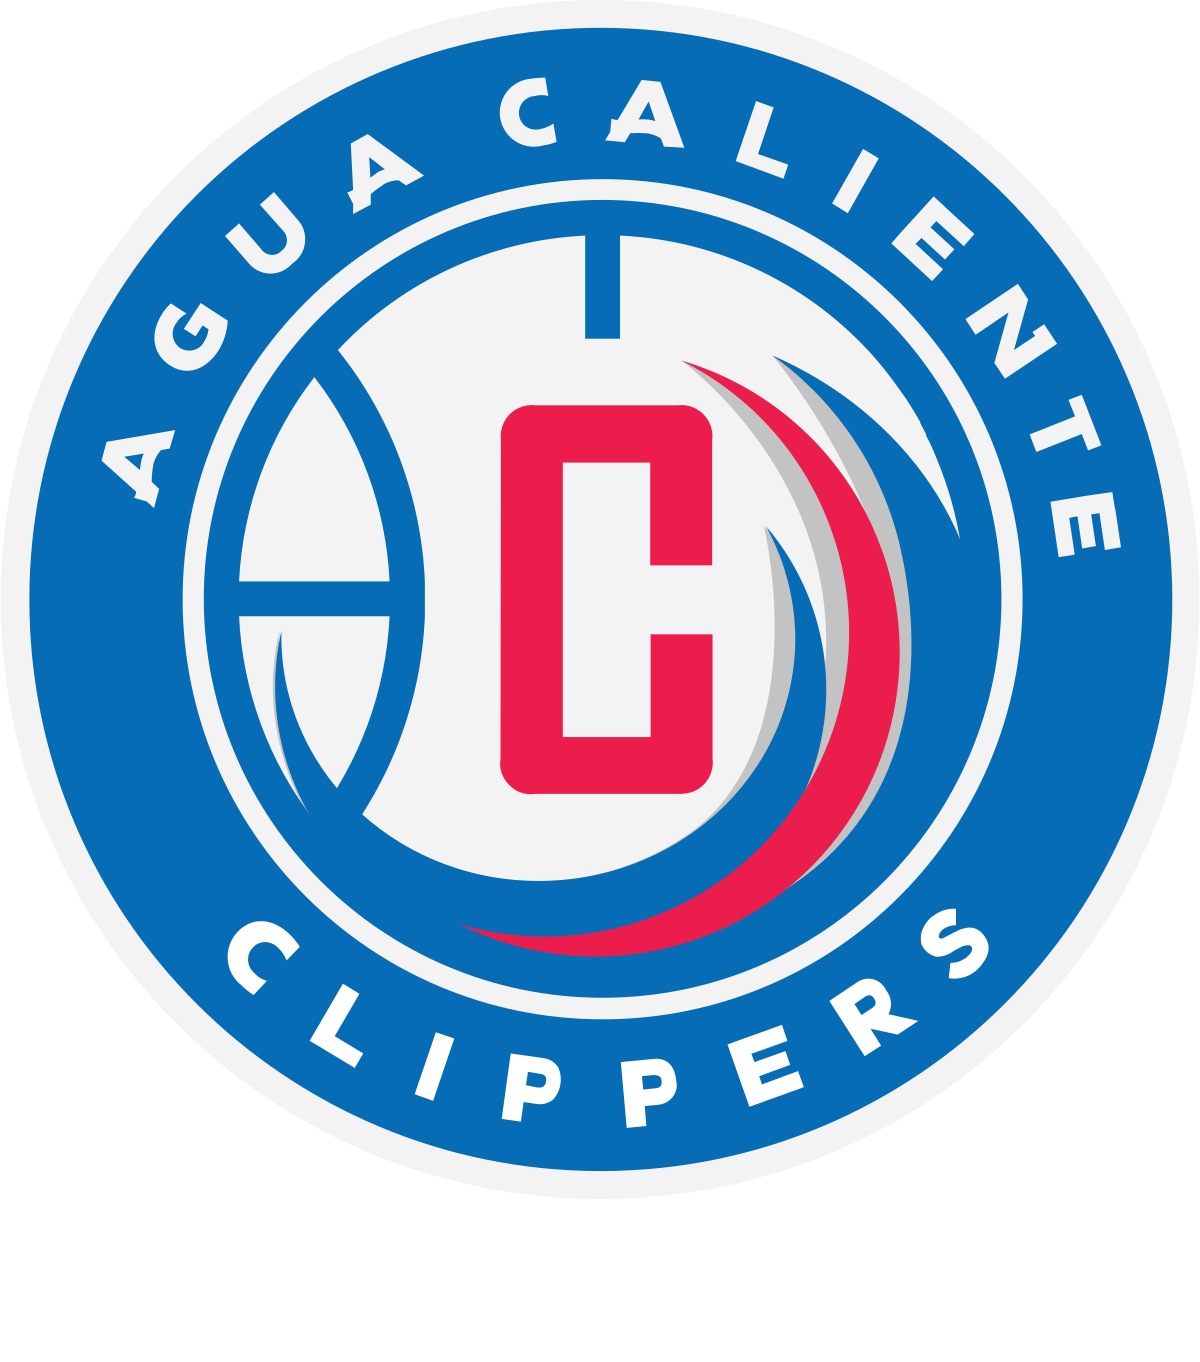 Agua Caliente Clippers Wikipedia